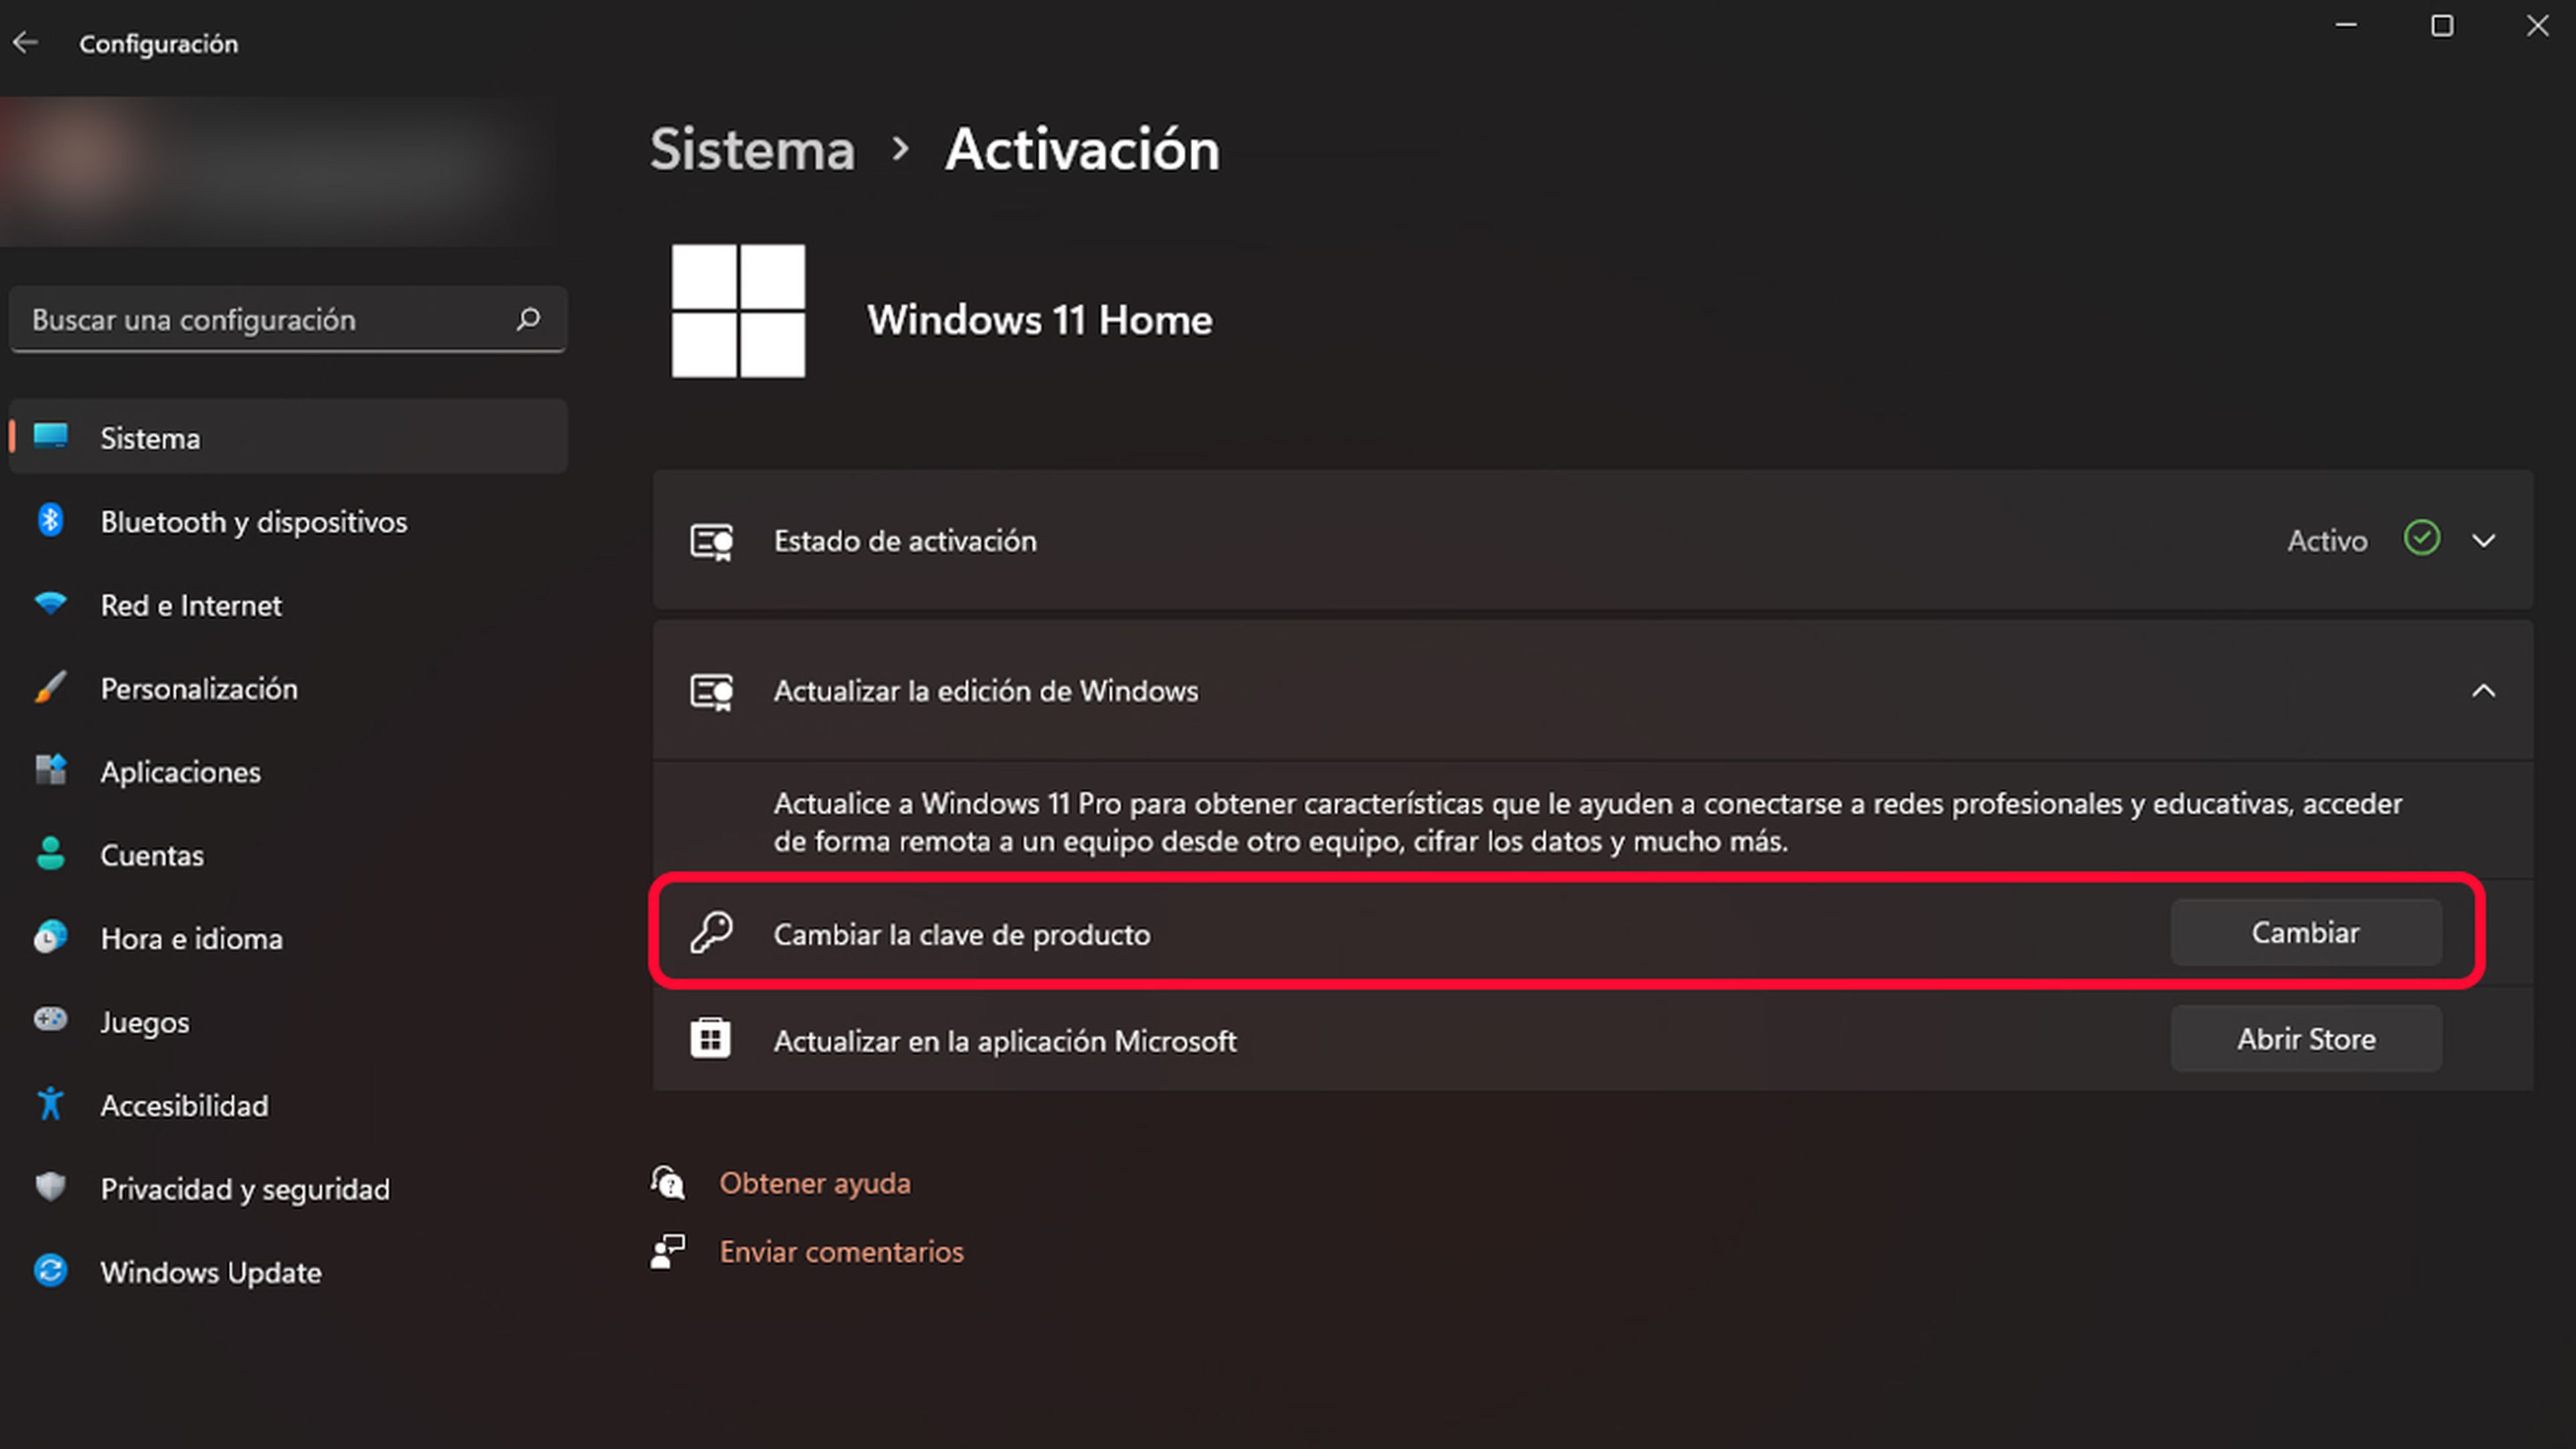 Cambiar clave de producto Windows 11